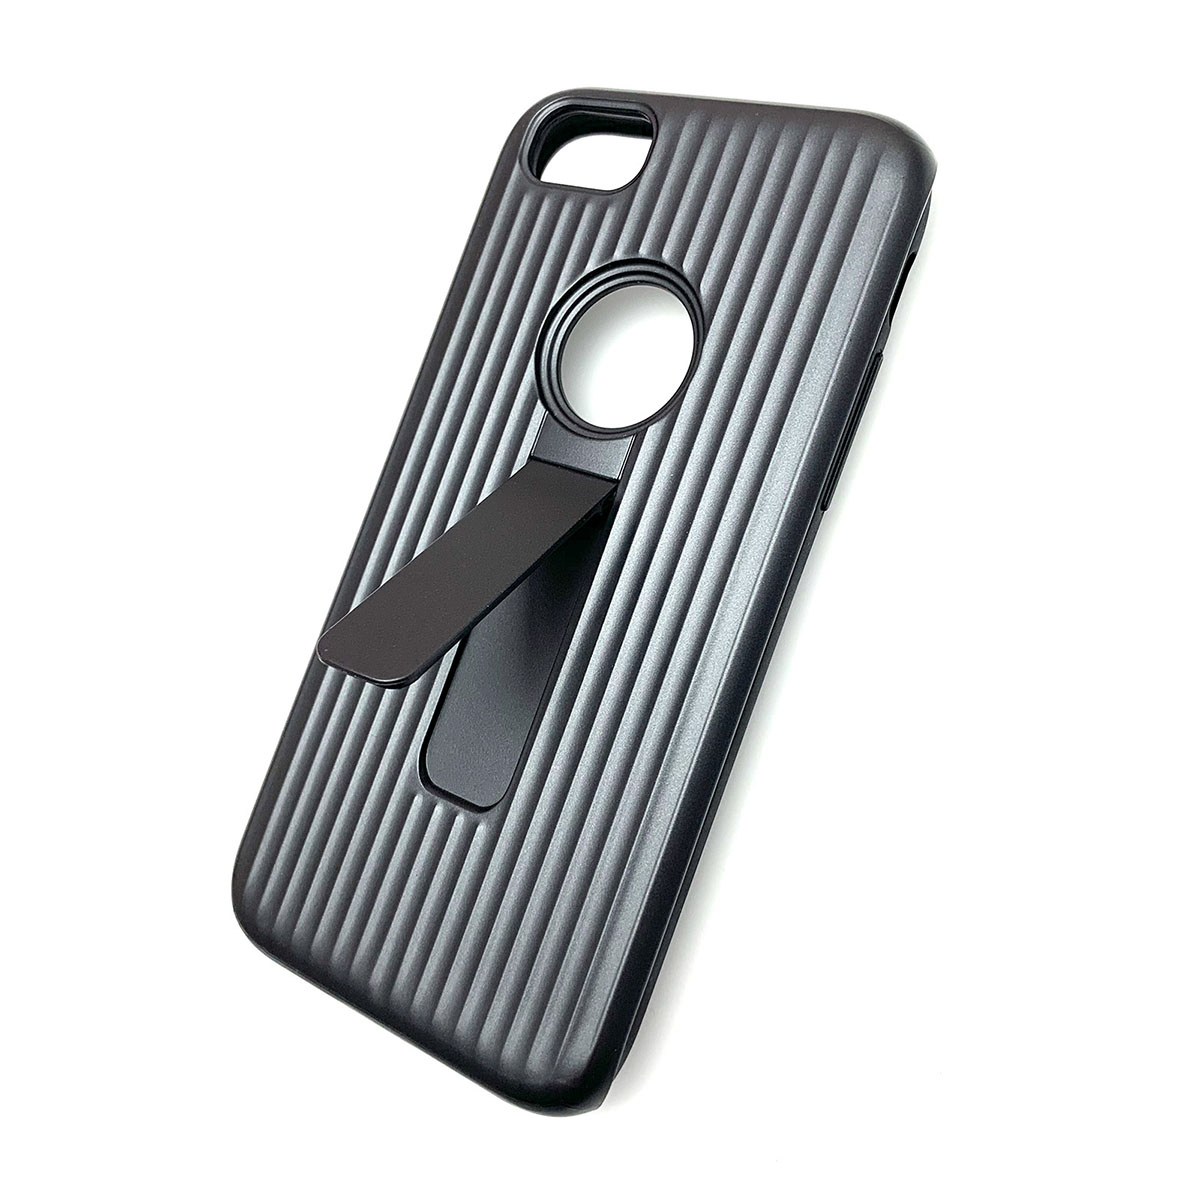 Чехол накладка для APPLE iPhone 7, 8, силикон, пластик, ребристый, цвет графитовый.